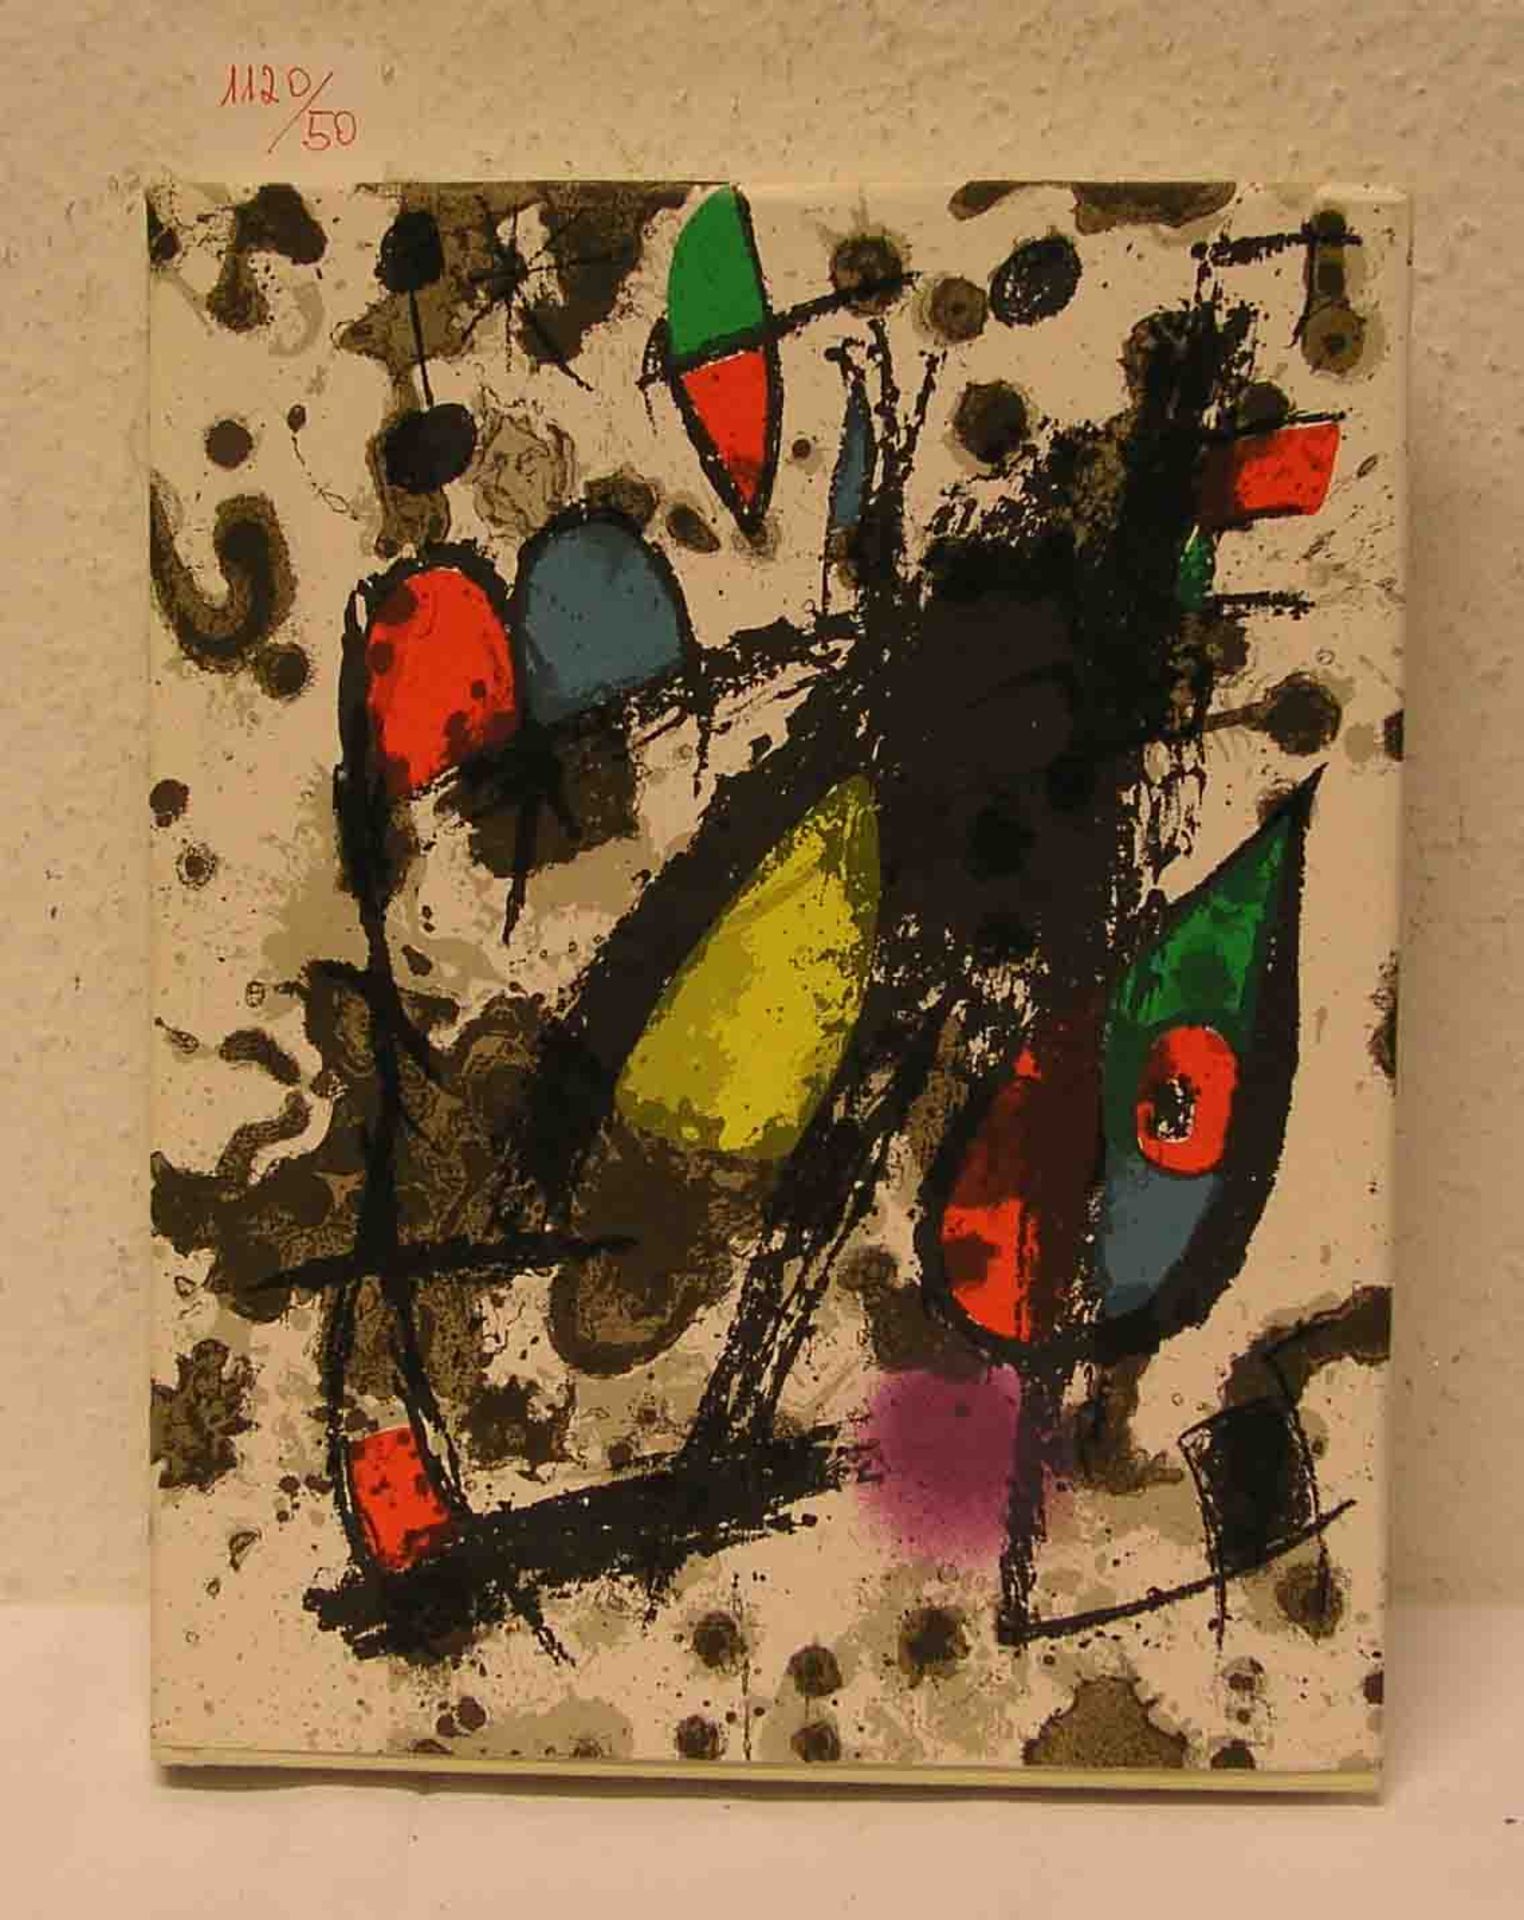 Joan Miró: "Der Lithograph" II 1953 - 1963, Weber, Genf. Fünf kleine und sechs